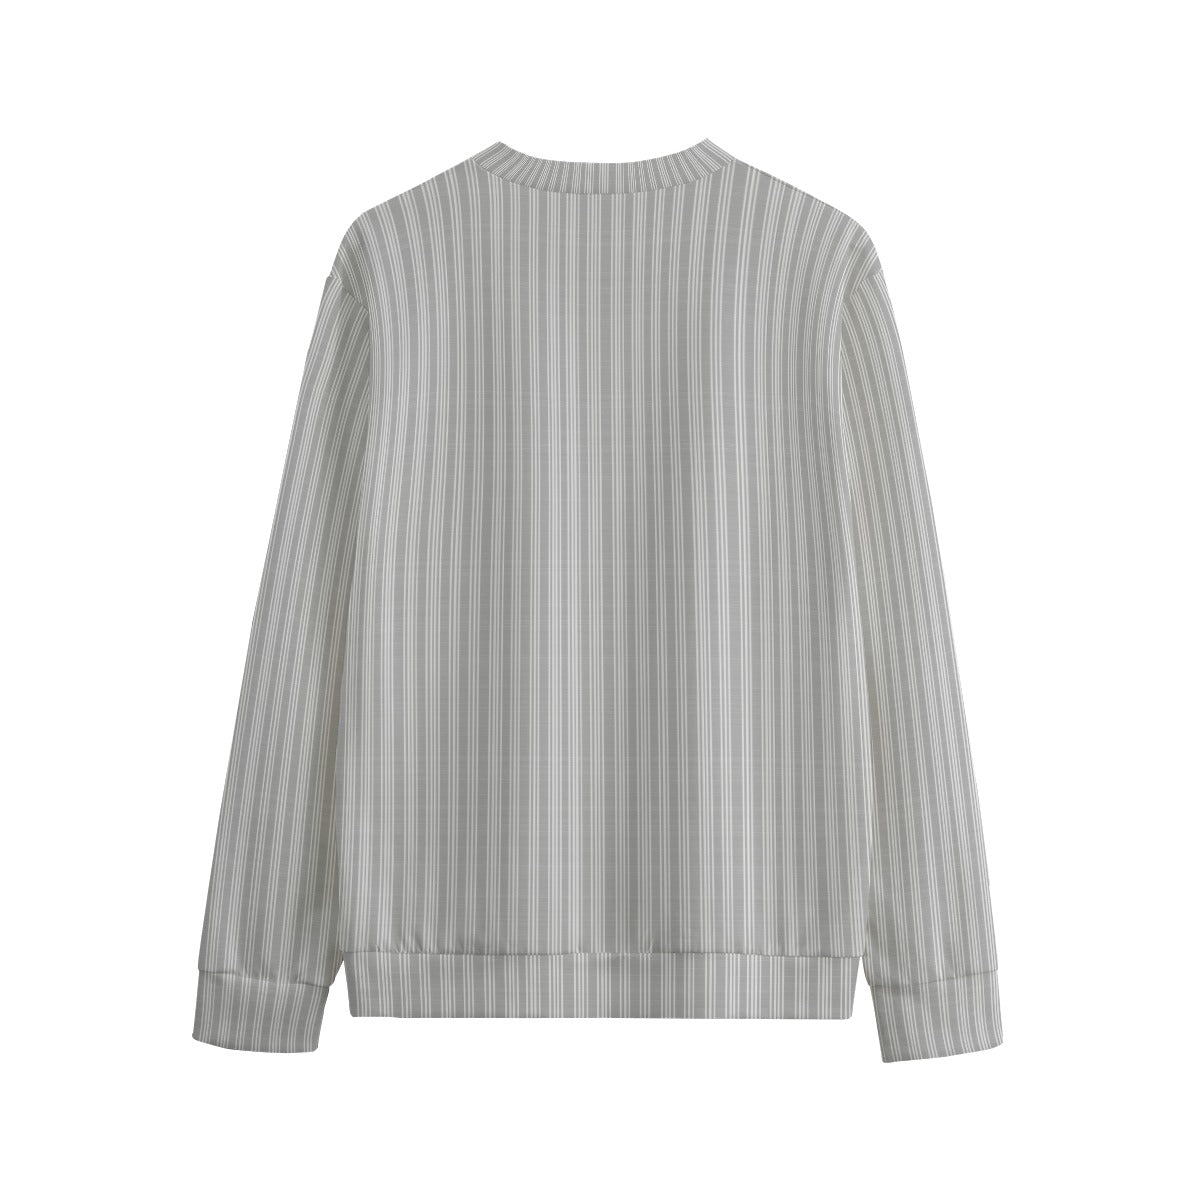 Vampire Art 100% Cotton Vintage Grandad Stripes in Grey Unisex Sweatshirt Jumper | 310GSM Cotton